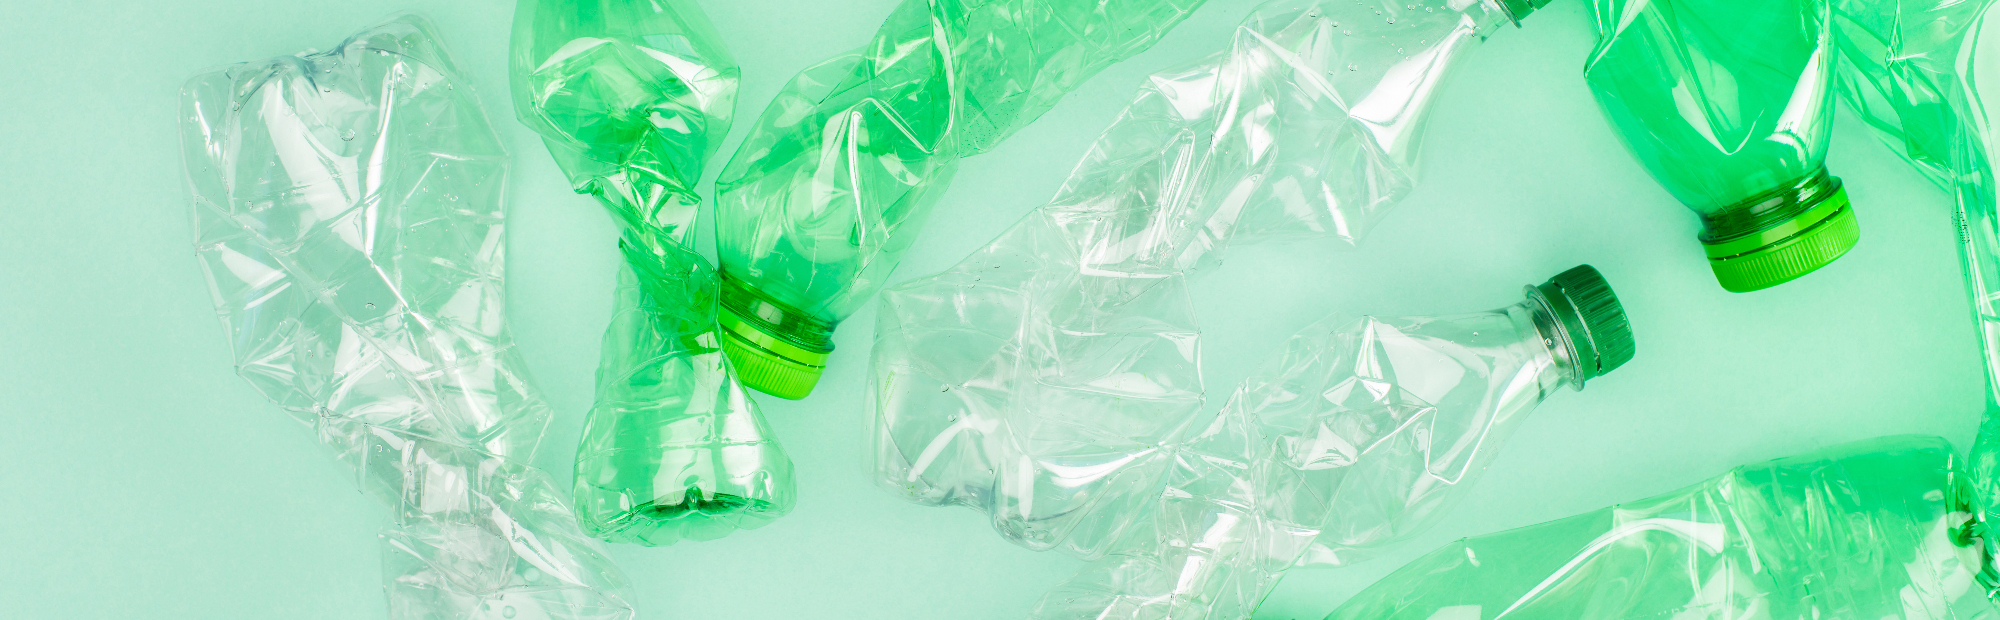 Naravna plastika se uporablja za izdelavo plastenk